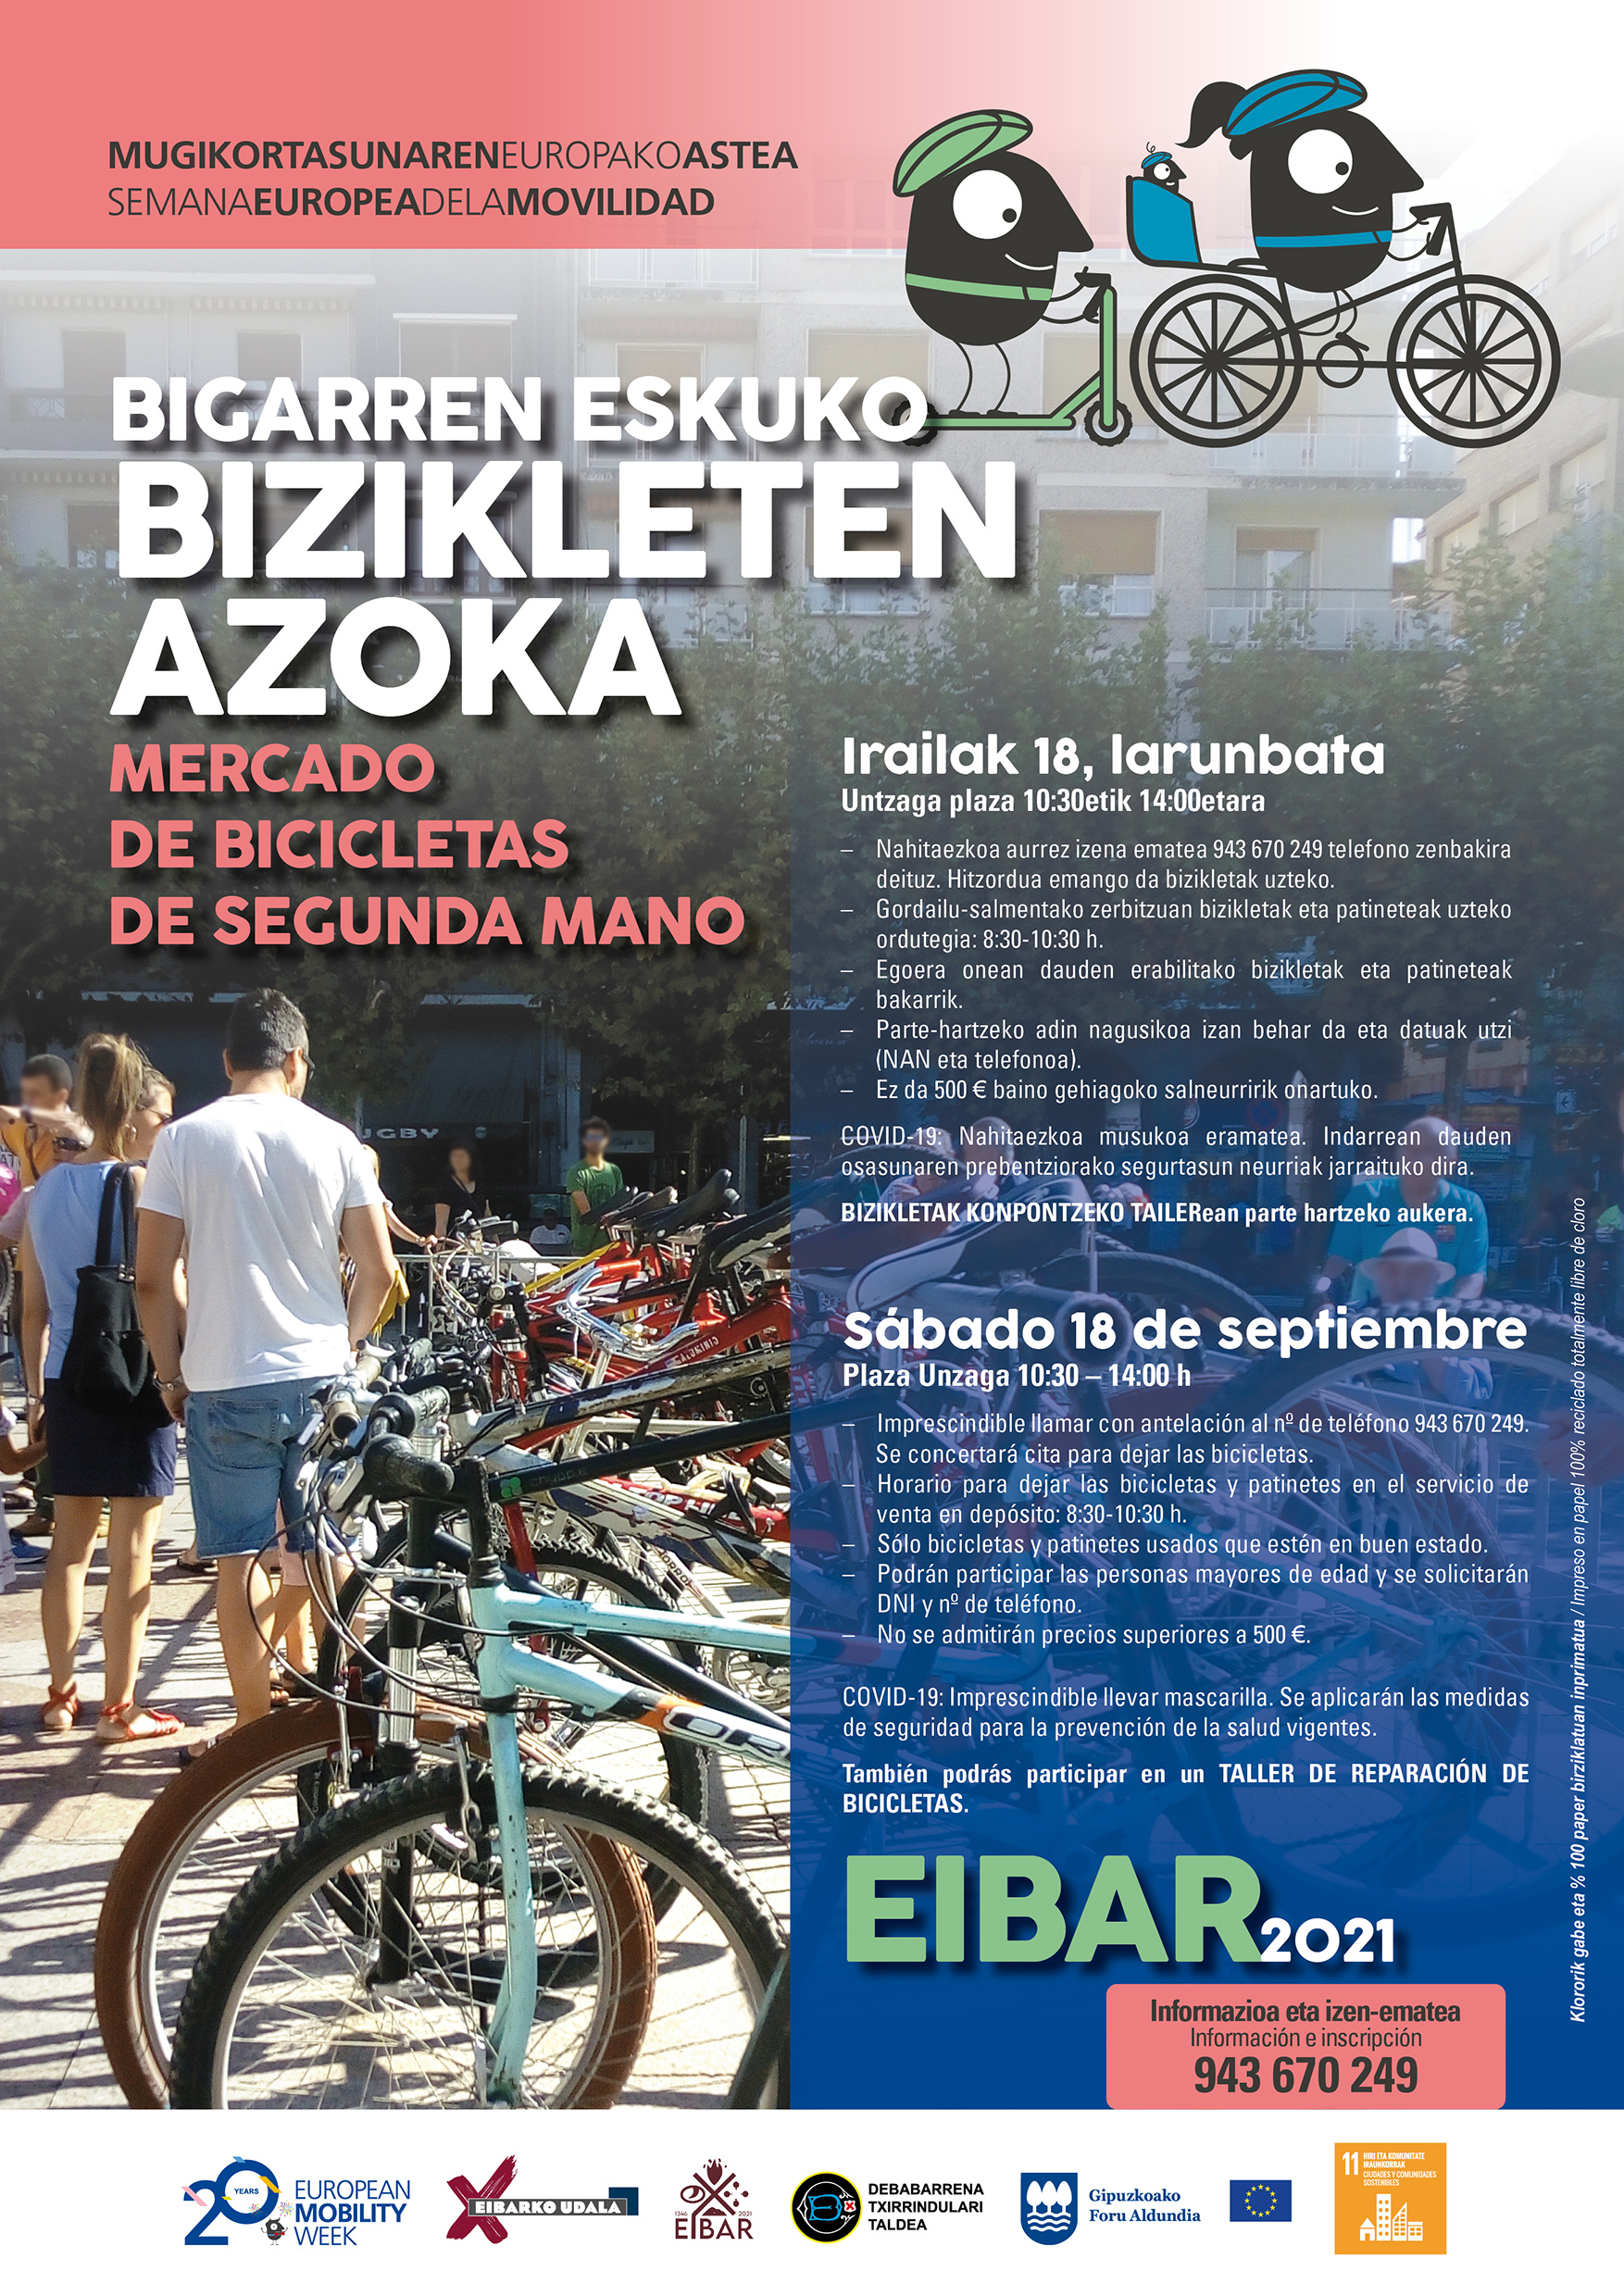 Mercado de segunda mano de bicicletas y taller de reparación de bicicletas - Semana Europea de la Movilidad